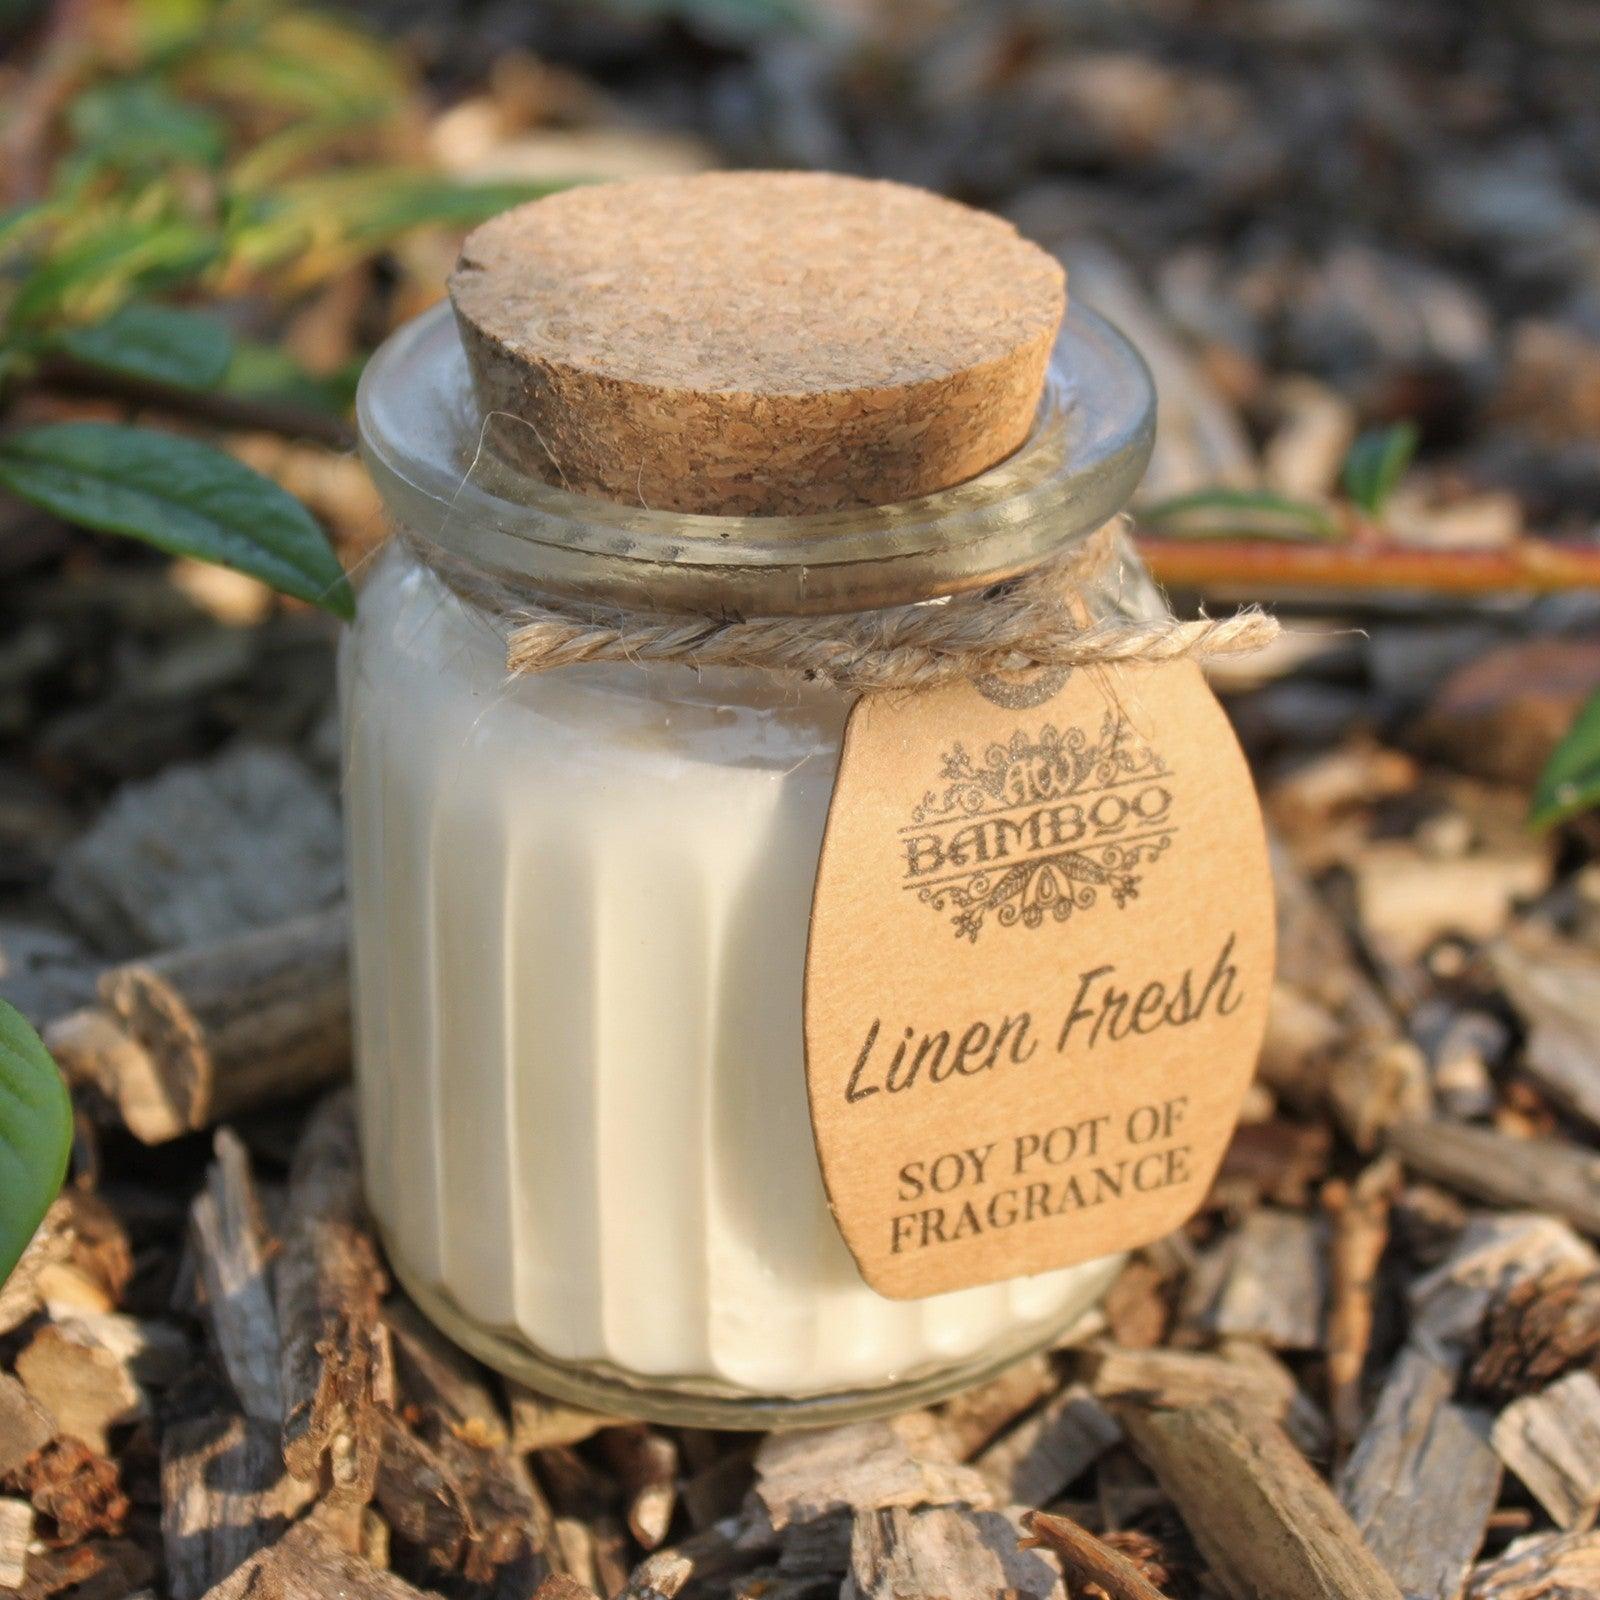 Linen Fresh Soy Pot of Fragrance Candles - DuvetDay.co.uk